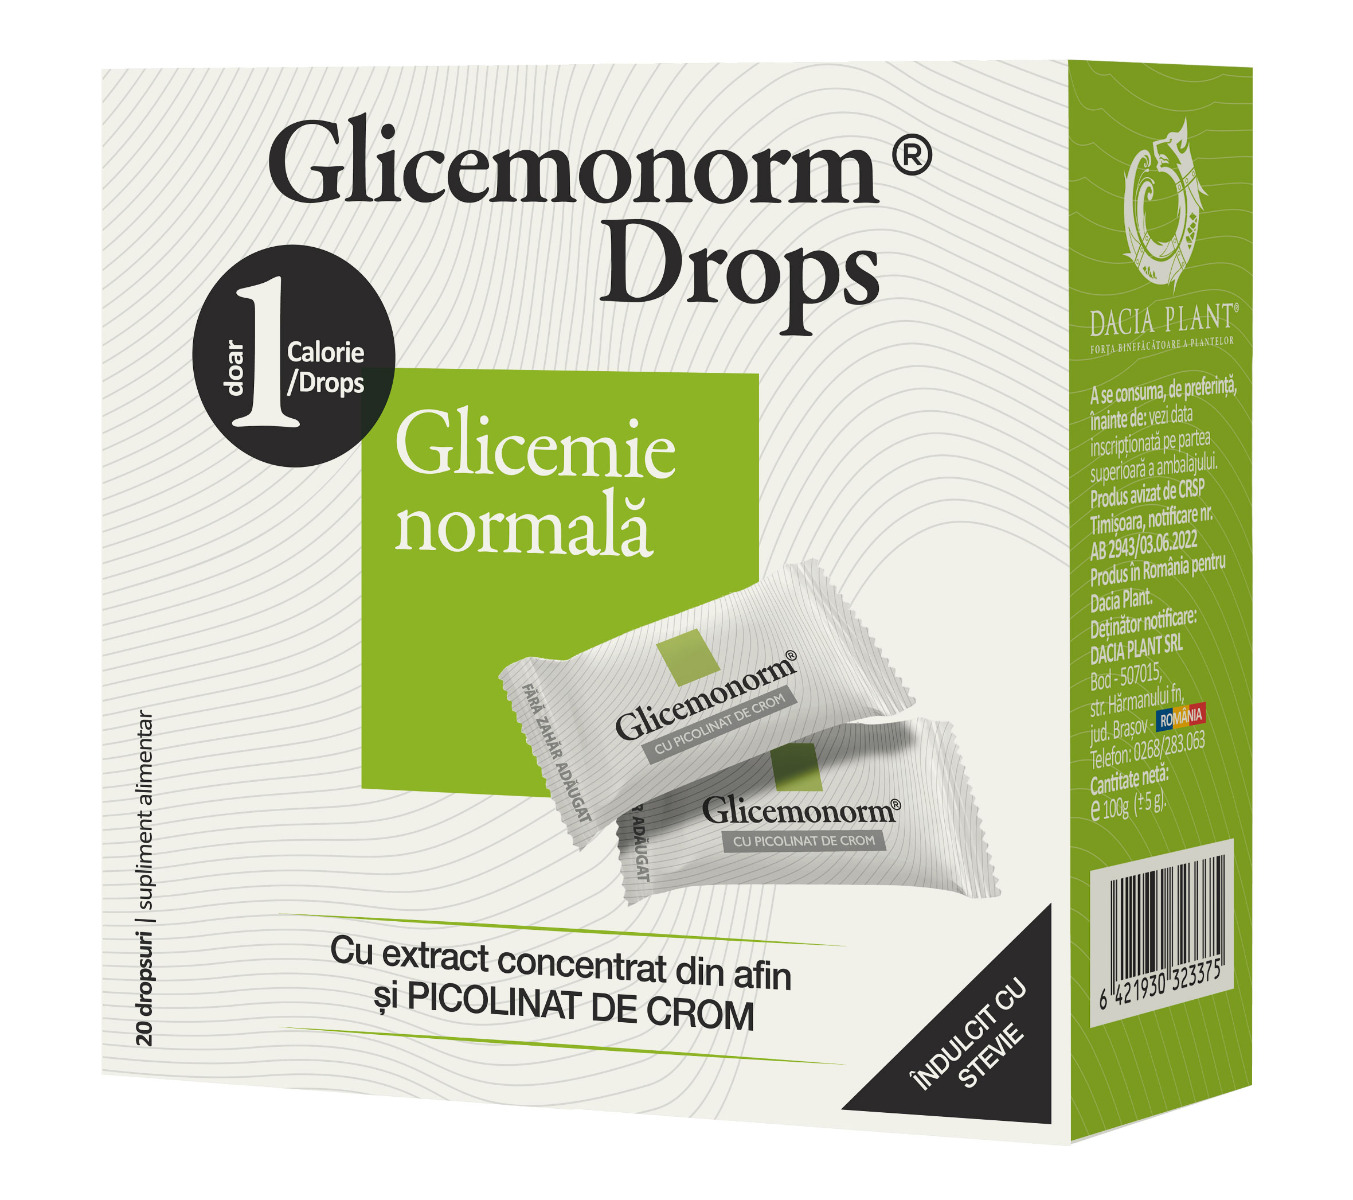 Glicemonorm Drops Mentine Glicemia normala 100g Dacia Plant imagine noua